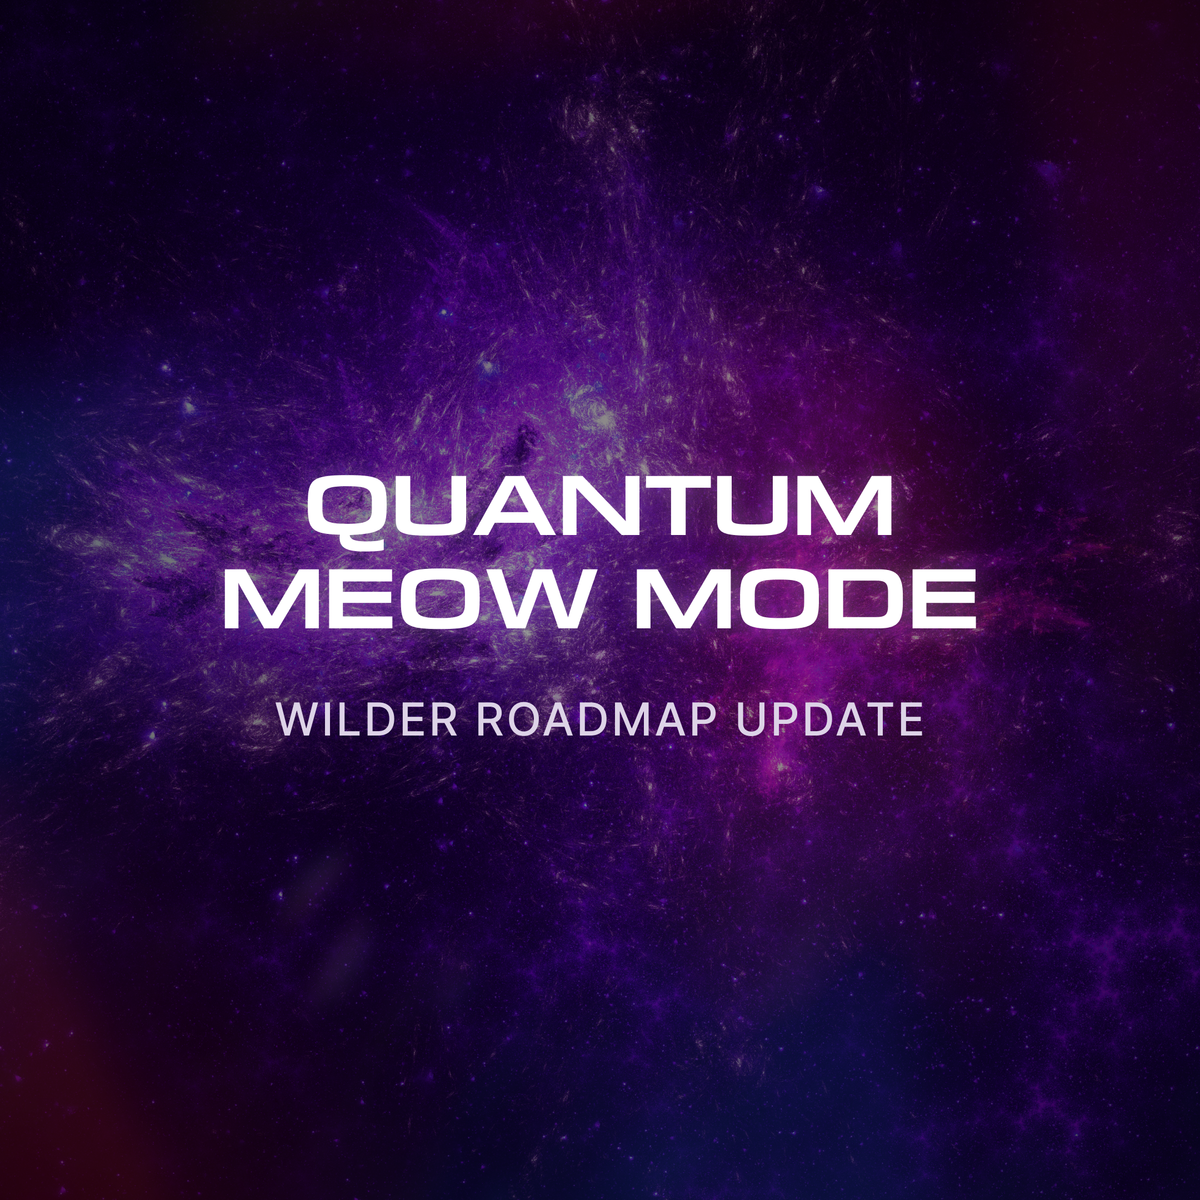 Wilder Roadmap Update: Activate QUANTUM MEOW MODE